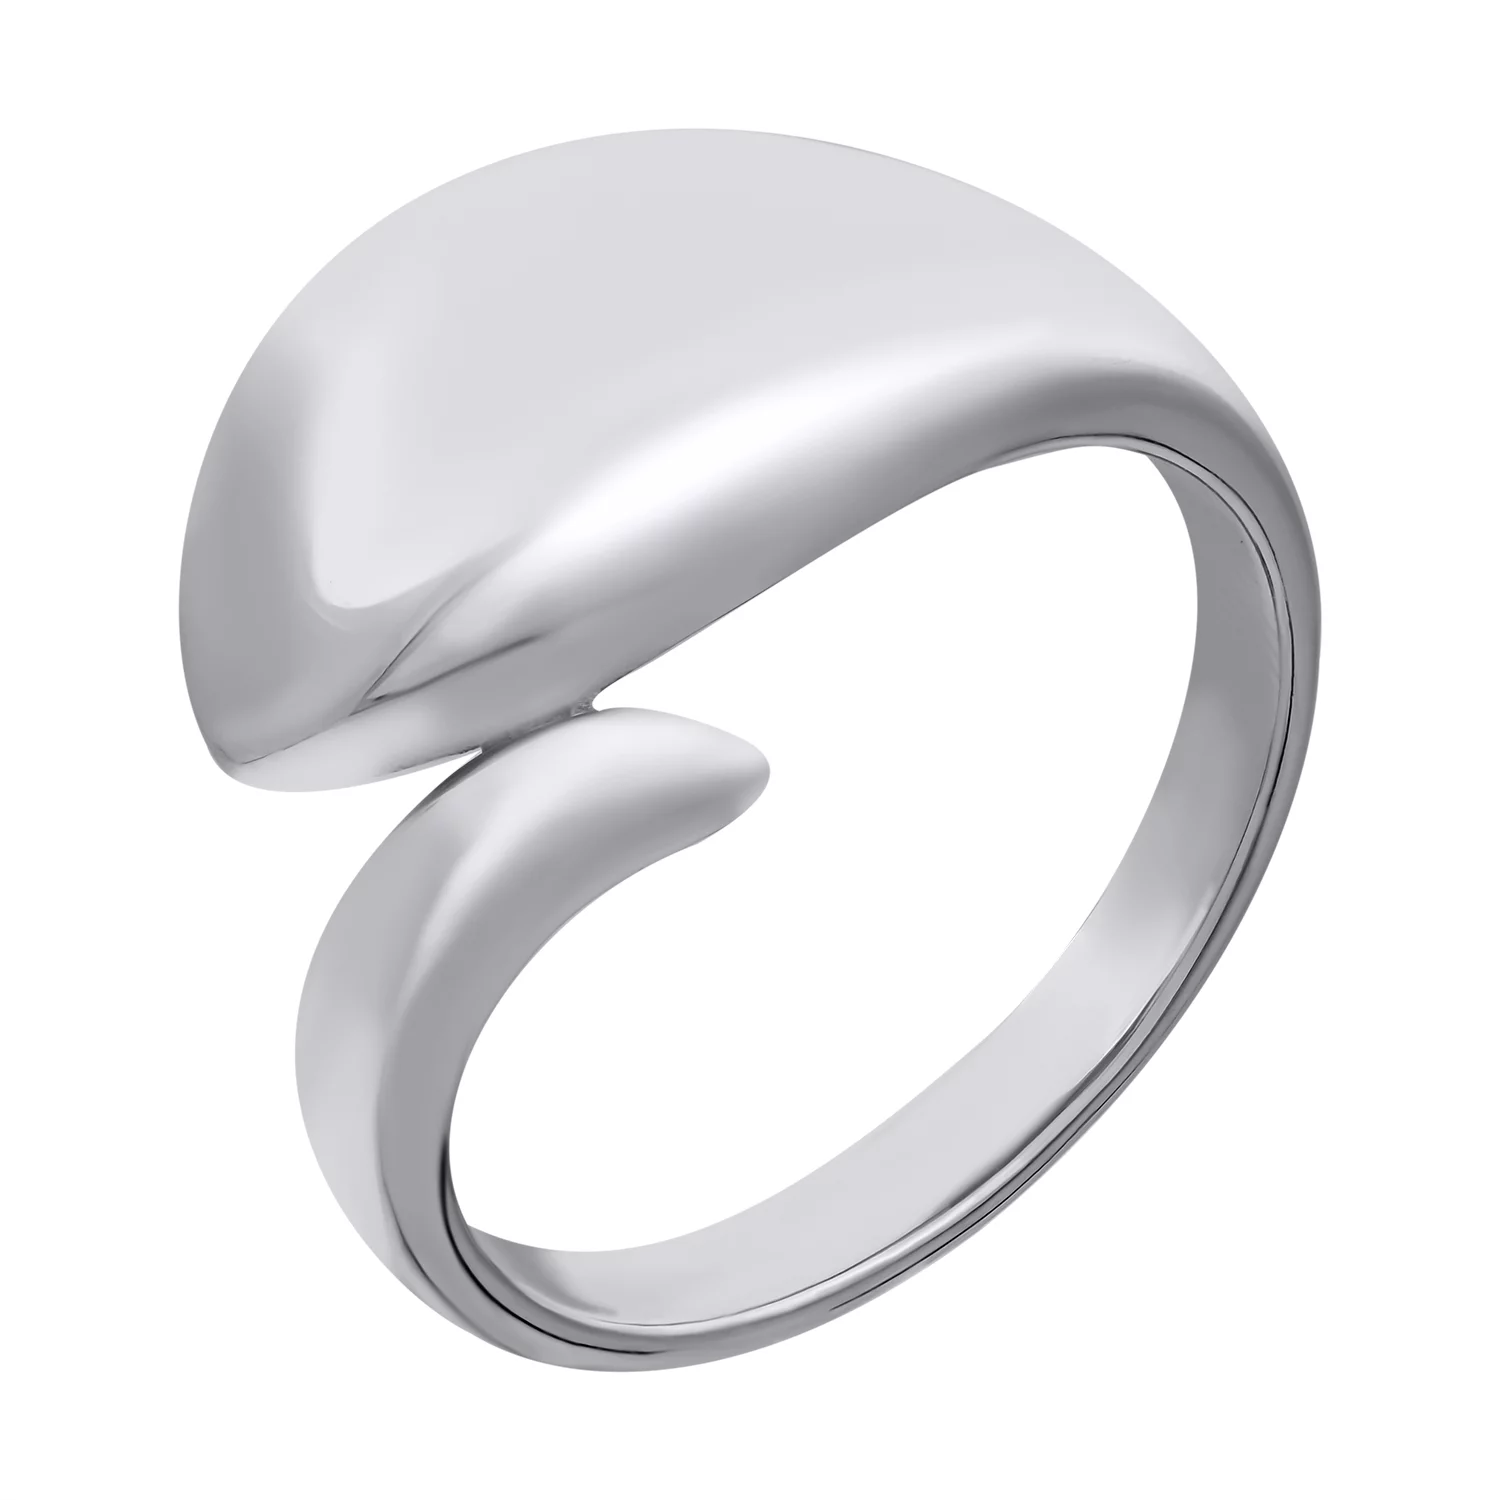 Кольцо серебряное с платиновым покрытием. Артикул 7501/500772-Пл: цена, отзывы, фото – купить в интернет-магазине AURUM